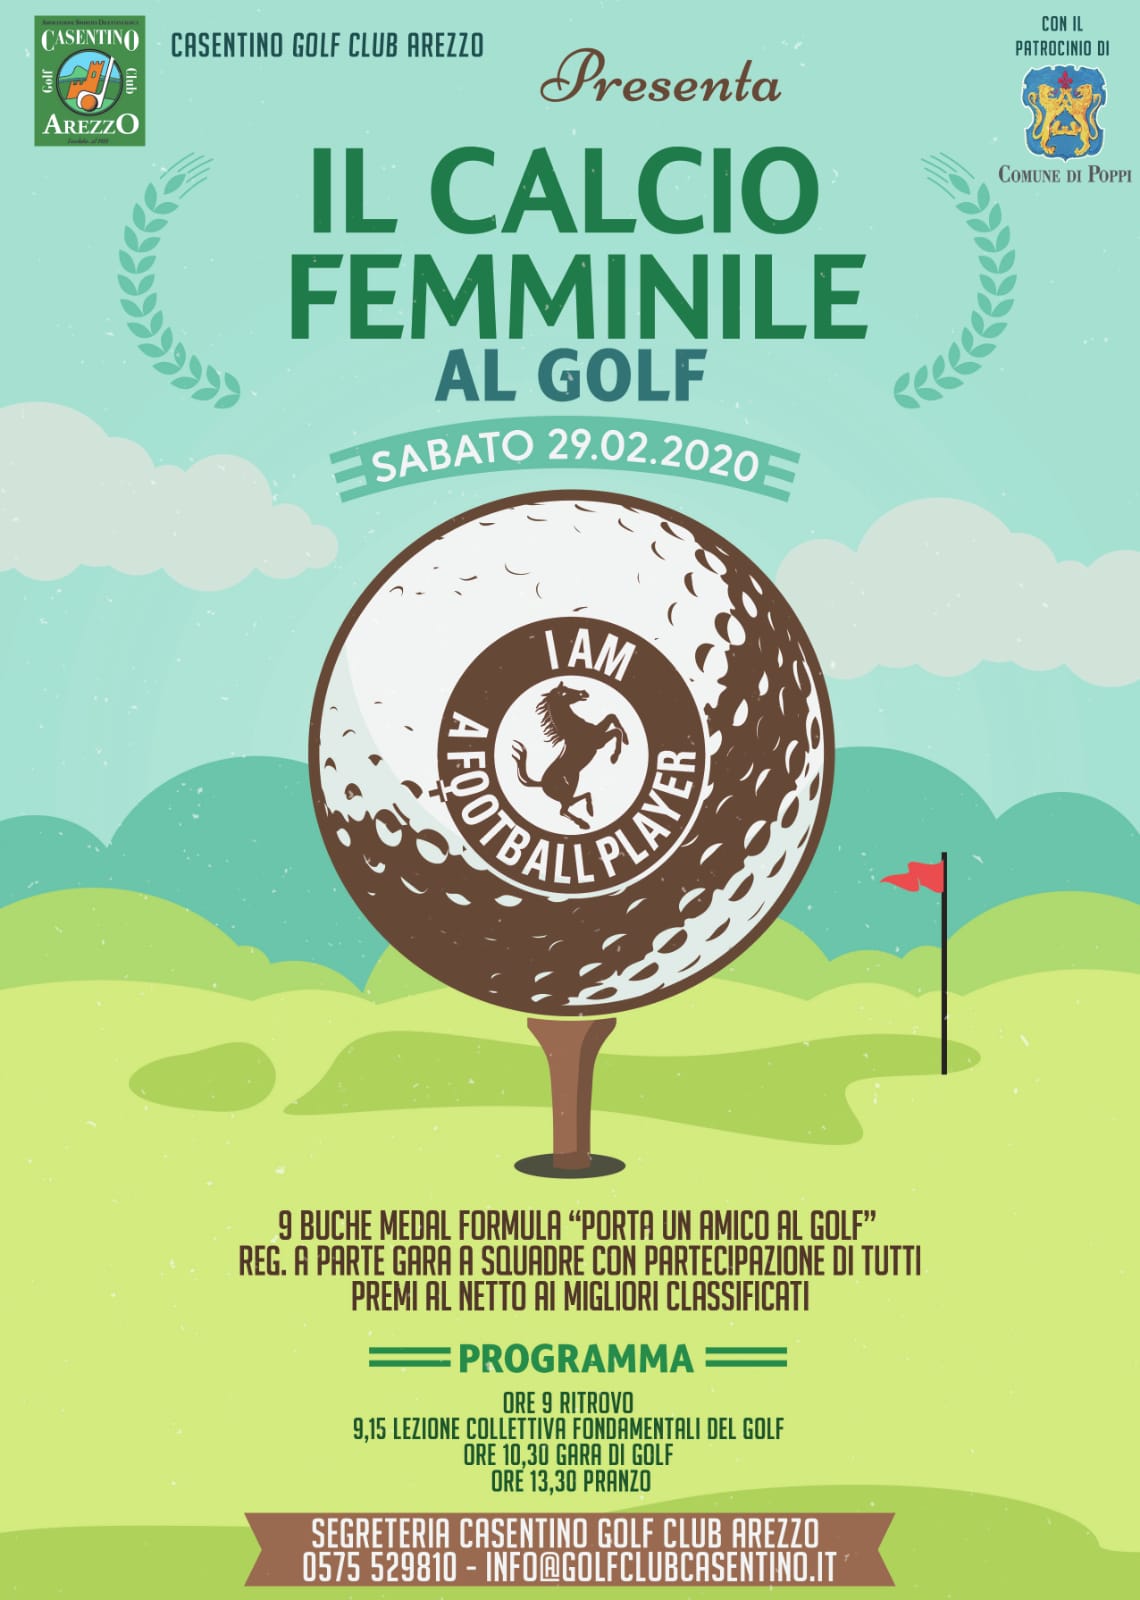 Acf Arezzo e Casentino Golf Club presentano: “Il calcio femminile al golf”